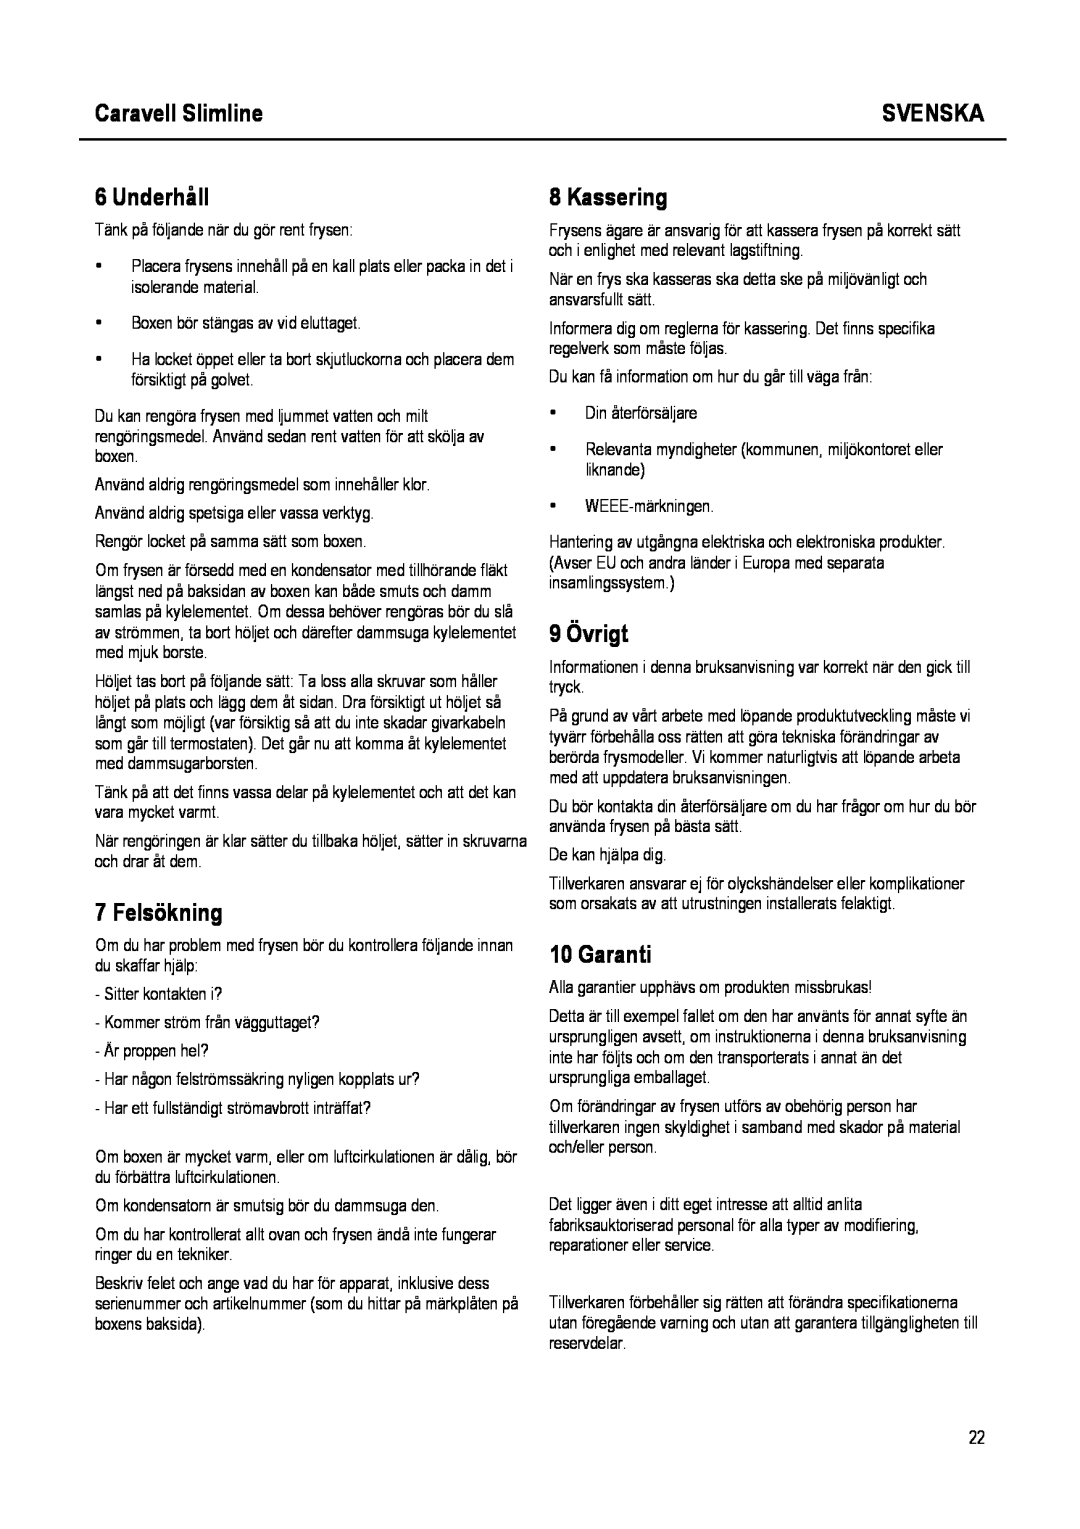 Caravell SLC 168 instruction manual Underhåll, Felsökning, Kassering, 9 Övrigt, Caravell Slimline, Svenska, Garanti 